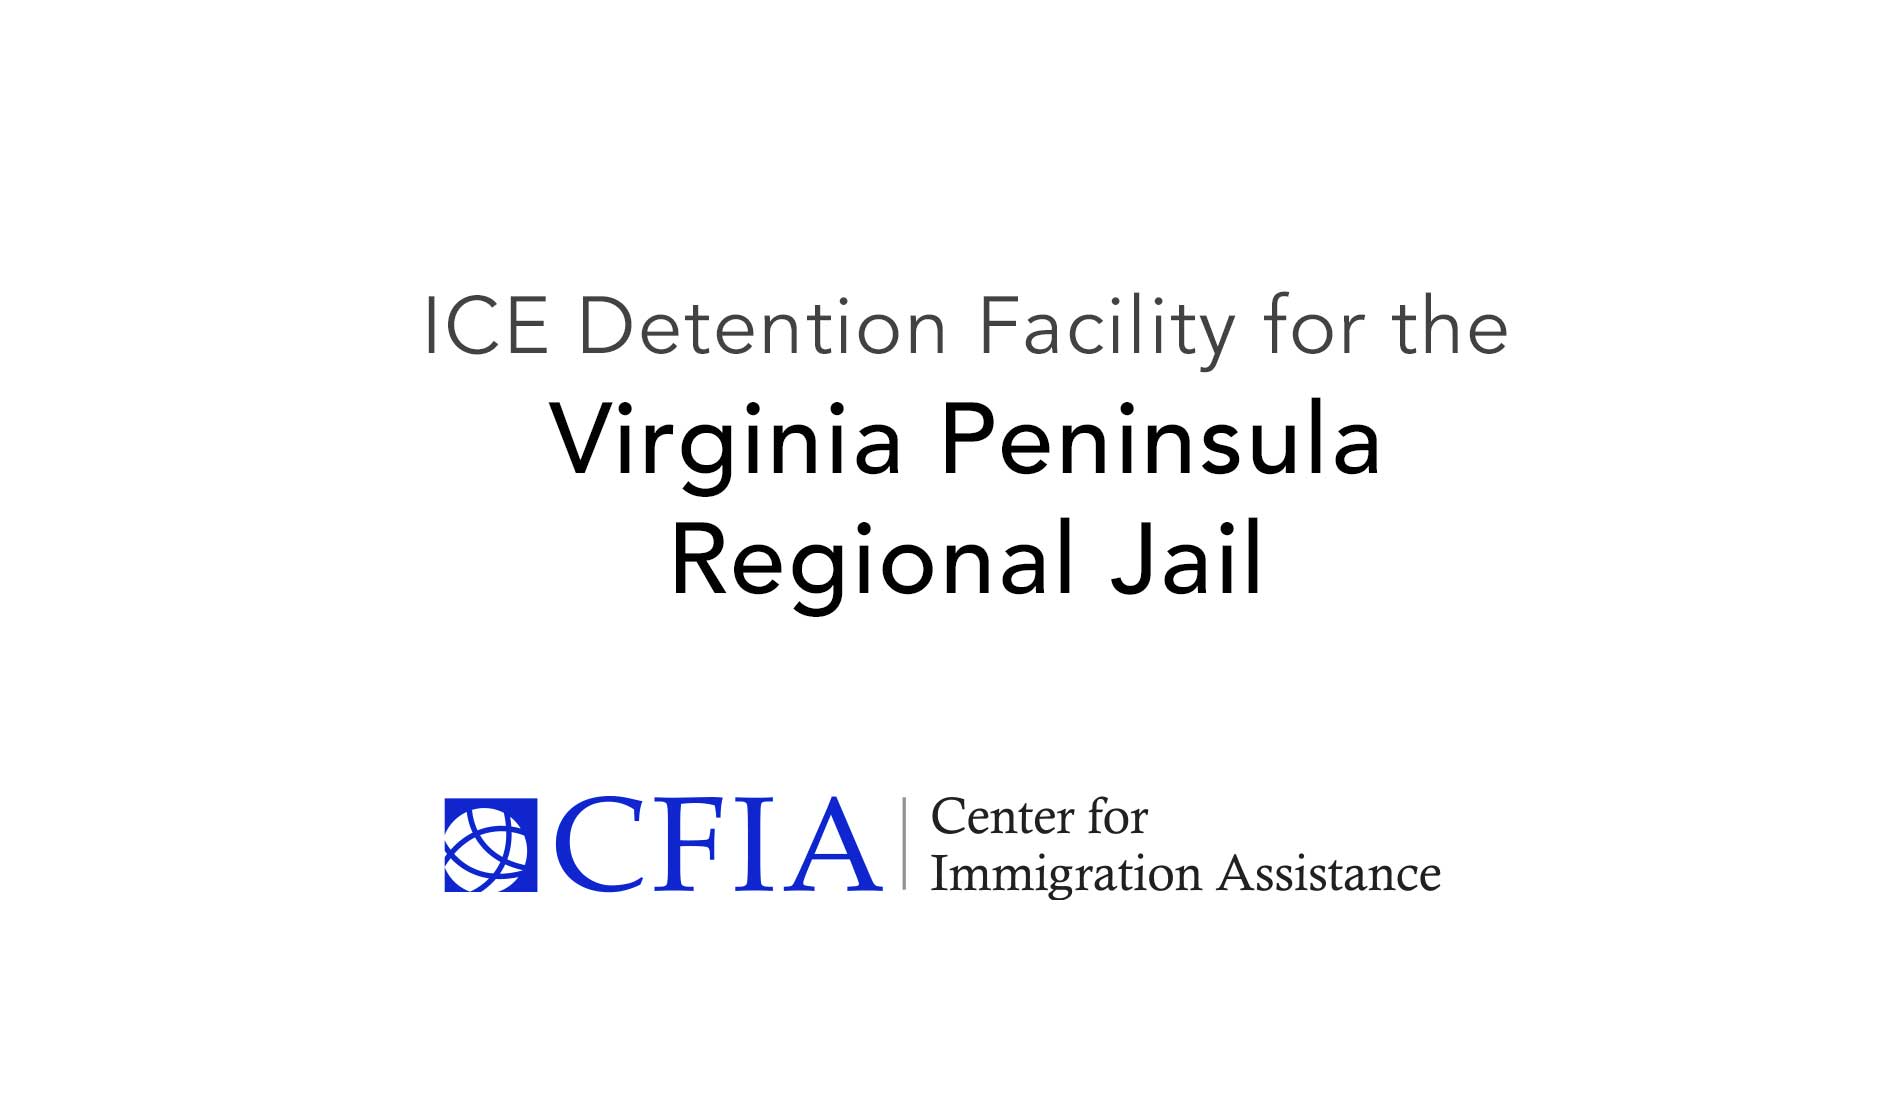 Virginia Peninsula Regional Jail